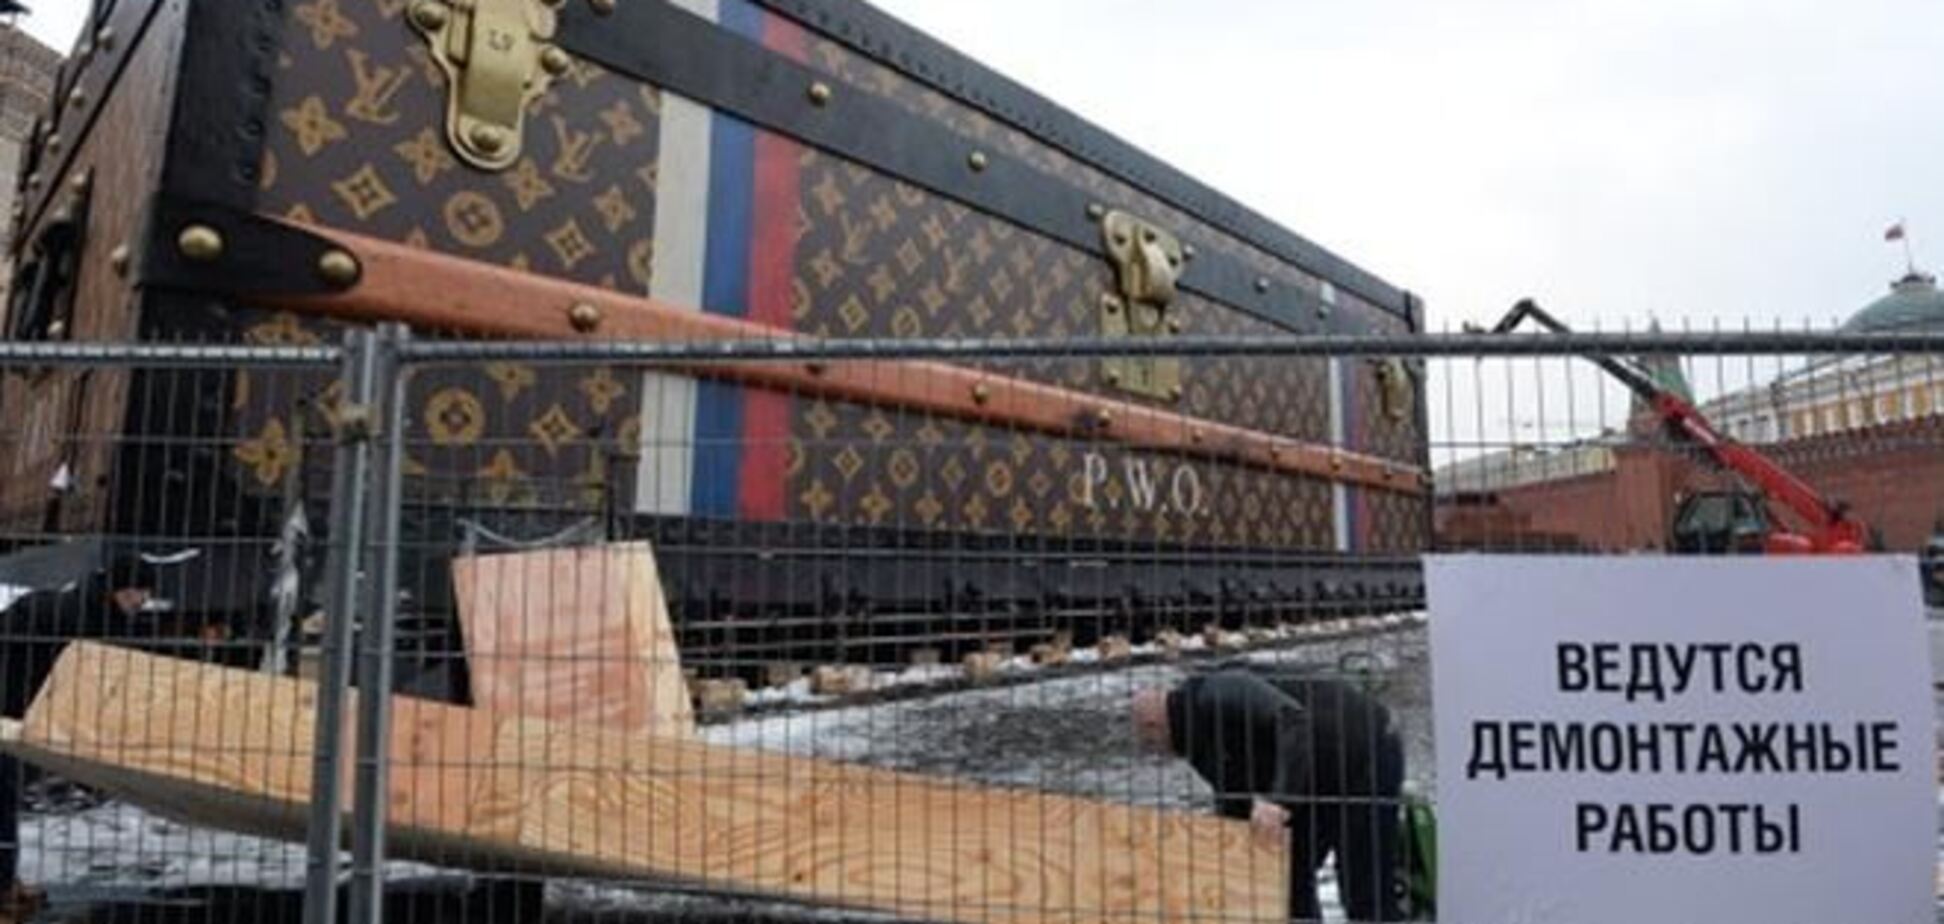 Виставка-чемодан Louis Vuitton в Москві переїде на іншу площу